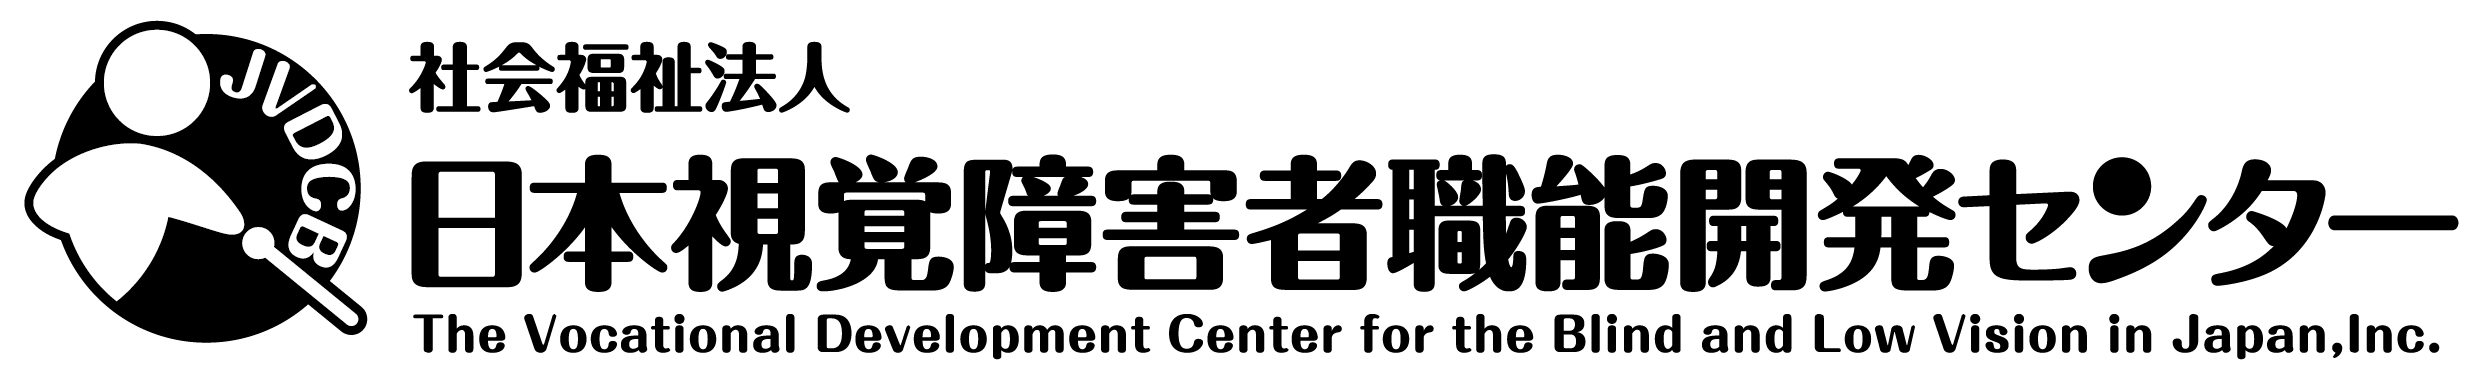 日本視覚障害者職能開発センターのロゴ：左に白杖を持った人の絵に、右に社会福祉法人日本視覚障害者職能開発センターと記載のロゴアイコン、左に白杖を持った人、右に社会福祉法人日本視覚障害者職能開発センターが記載